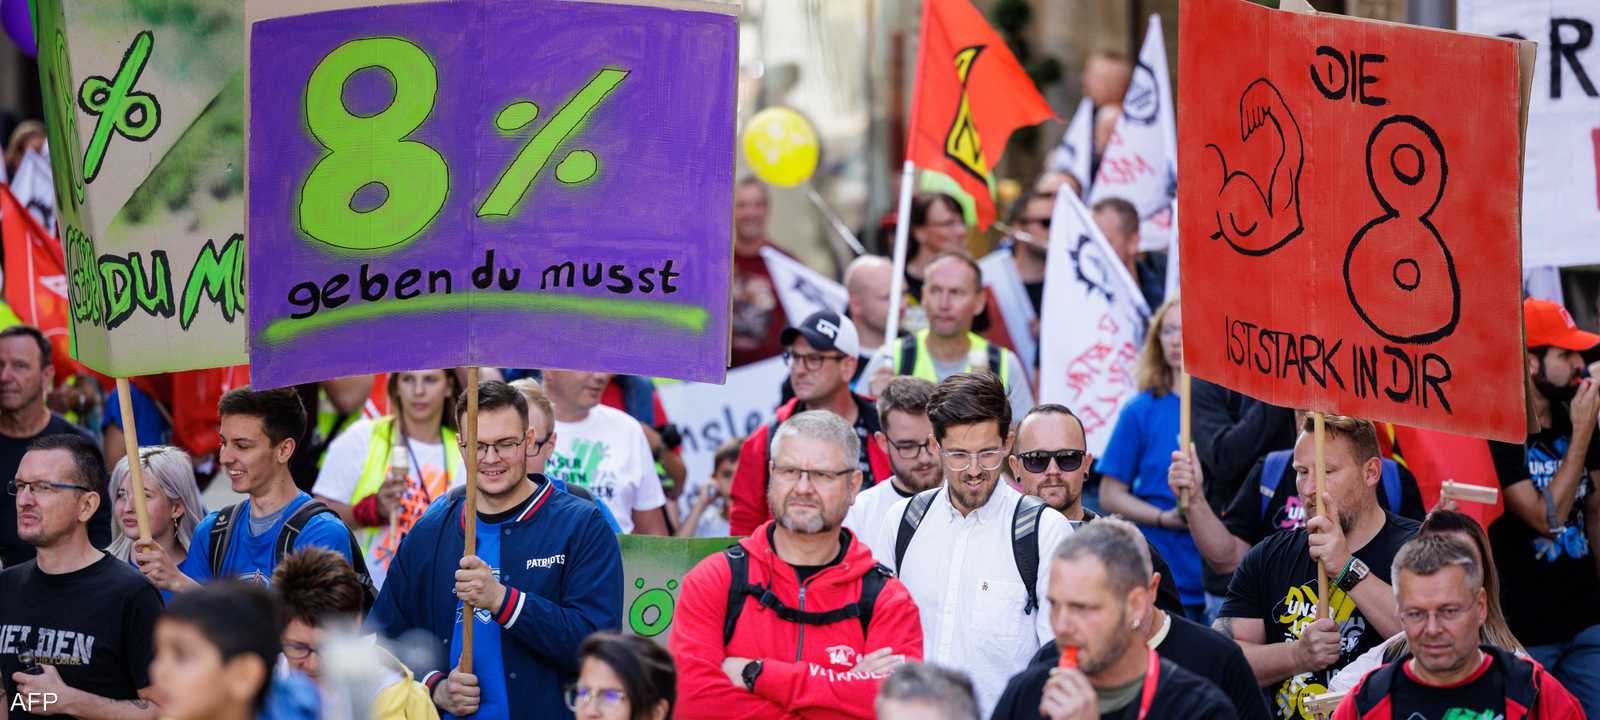 متظاهرون في ألمانيا يطالبون بزيادة الأجور- أرشيفية